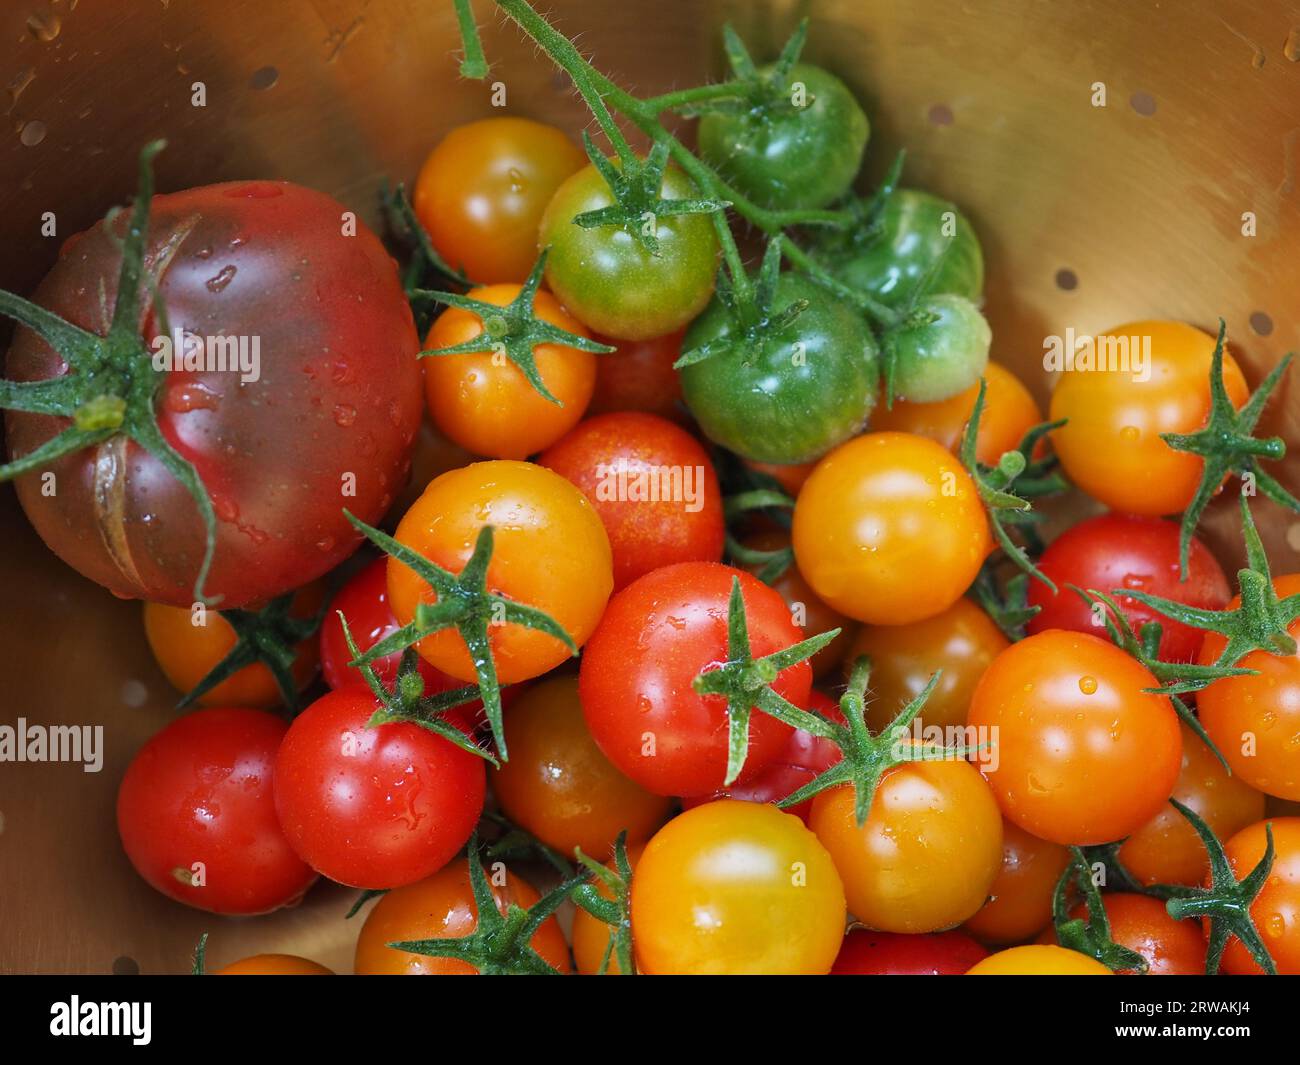 Nahaufnahme einer Auswahl kleiner, farbenfroher Tomaten aus dem Garten - Black Russian, Sungold und Gardener's Delight Sorten Stockfoto